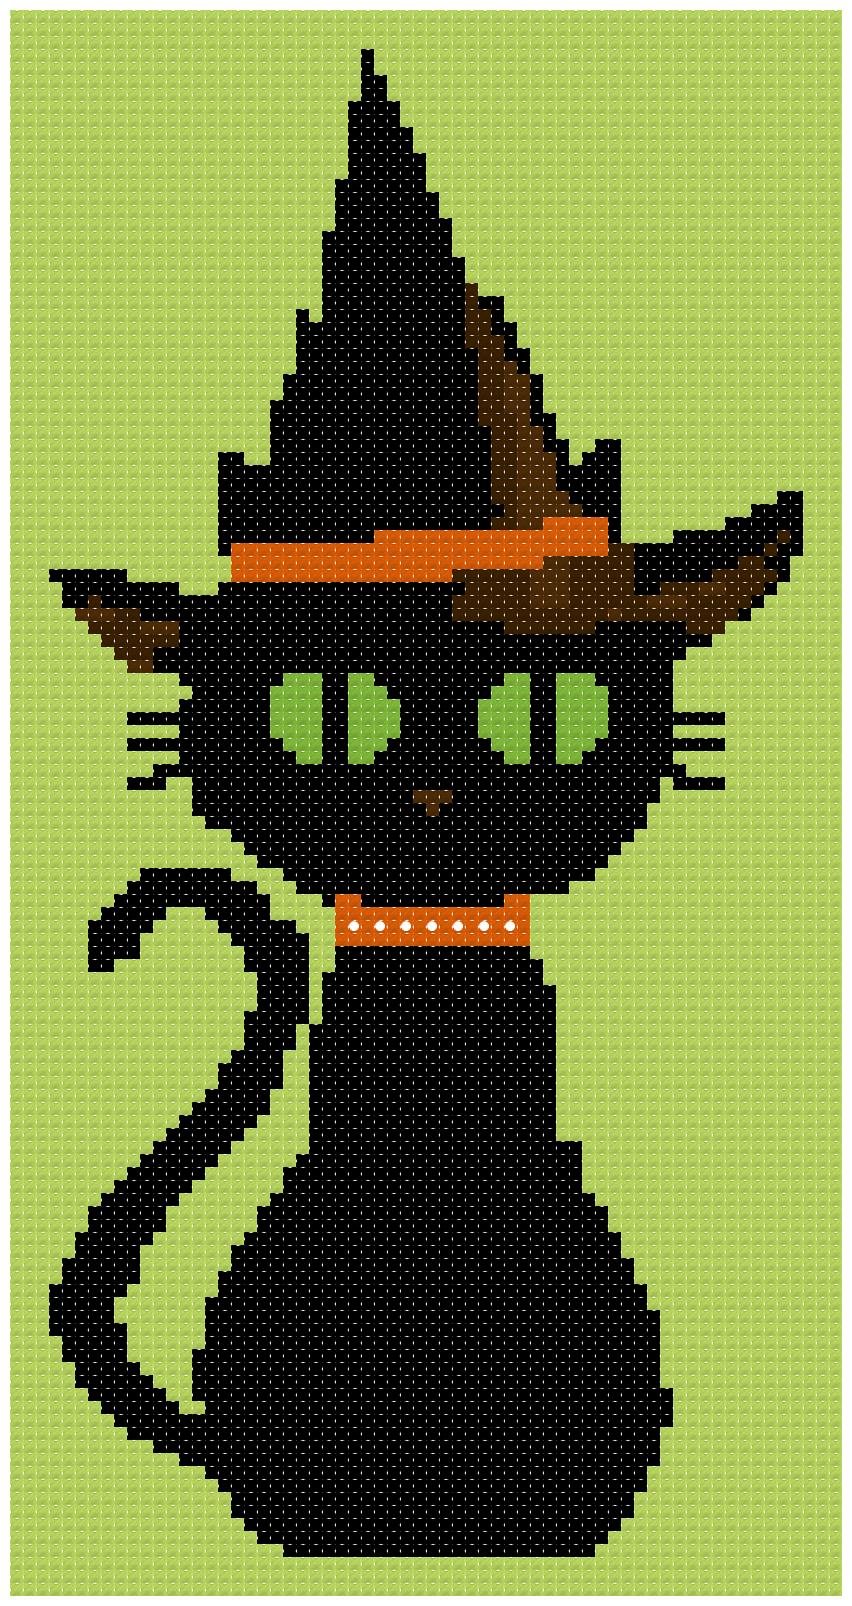 Котик квадратик. Хэллоуин кошка. Хэллоуин вышивка крестом кот. Вышивка чёрный кот Хэллоуин. Вышивка крестом черный кот.